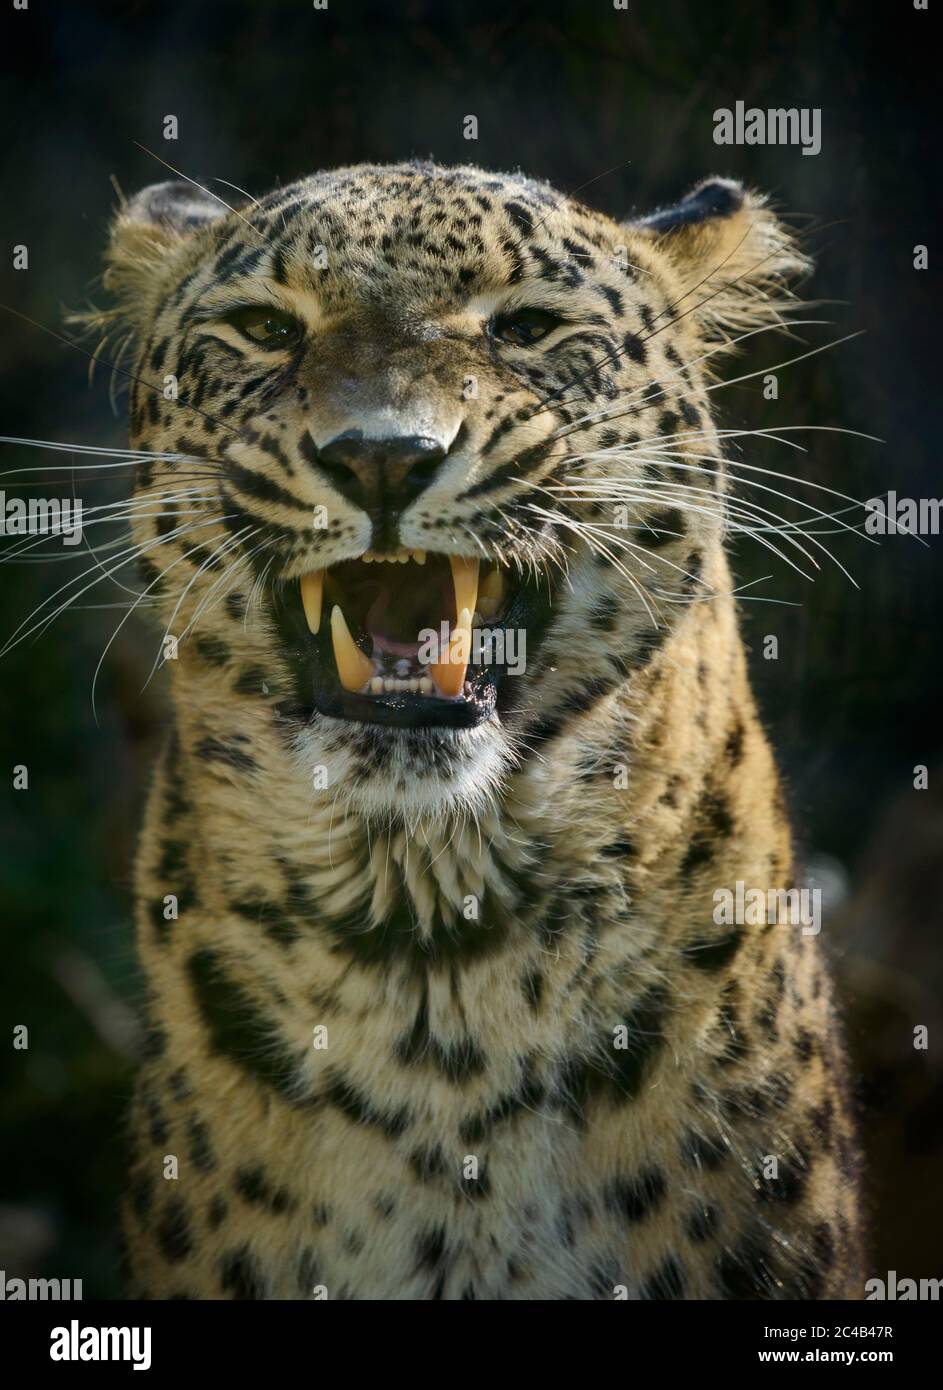 Leopard (Panthera pardus), männlich, zischend, gefangen, Vorkommen in Afrika und Asien Stockfoto